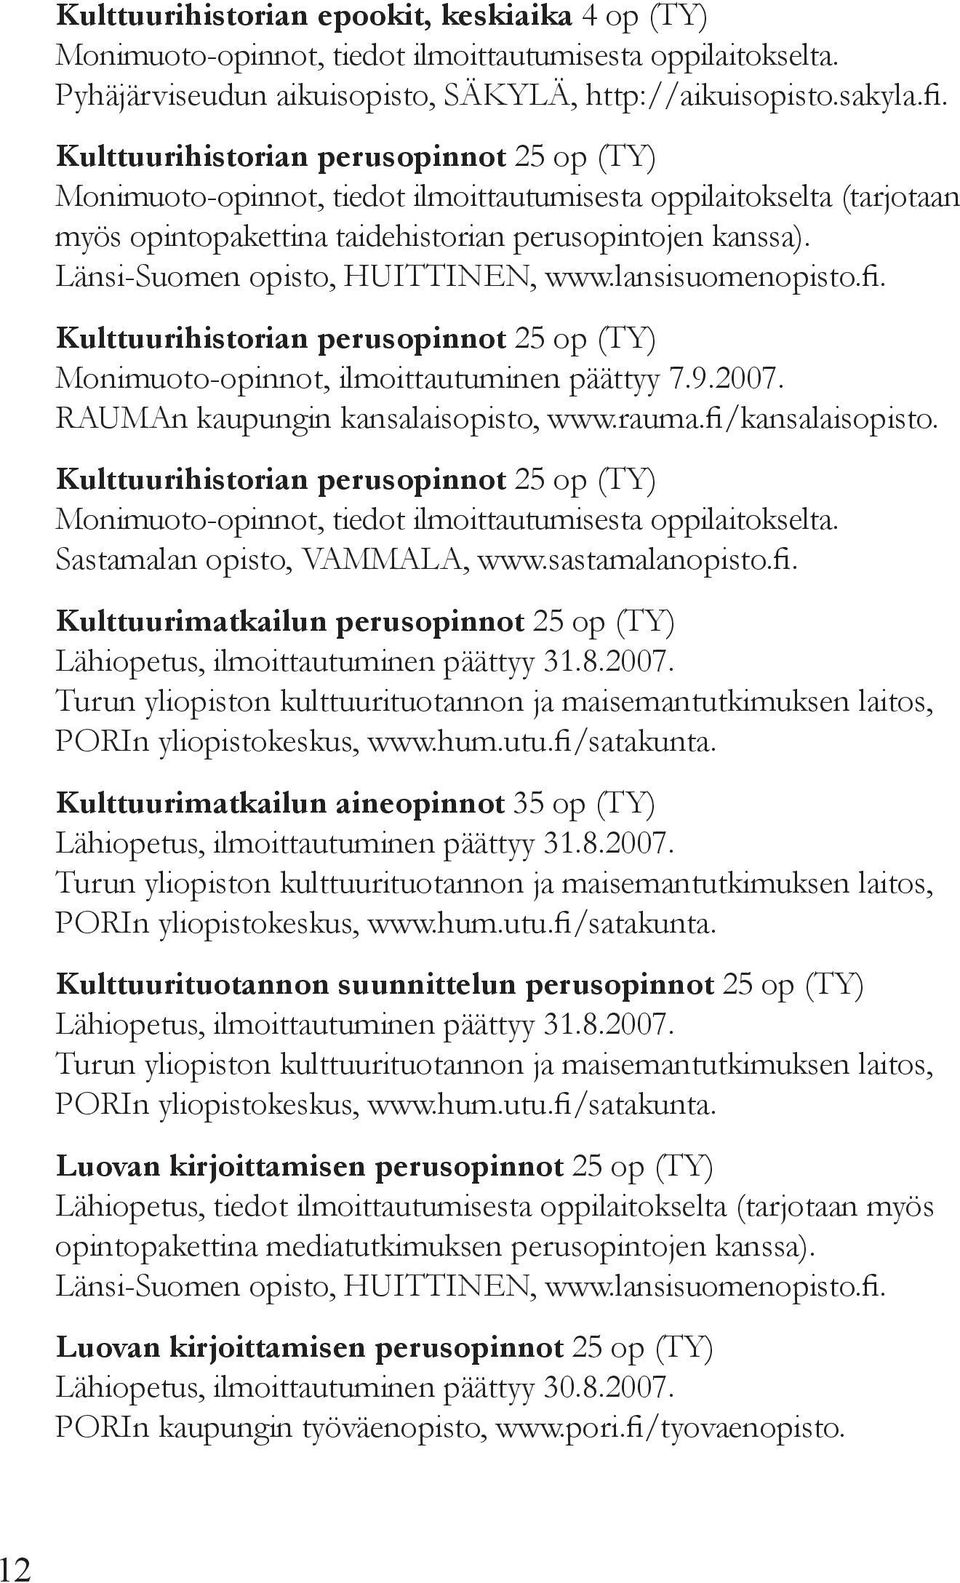 Länsi-Suomen opisto, Huittinen, www.lansisuomenopisto.fi. Kulttuurihistorian perusopinnot 25 op (TY) Monimuoto-opinnot, ilmoittautuminen päättyy 7.9.2007. Rauman kaupungin kansalaisopisto, www.rauma.